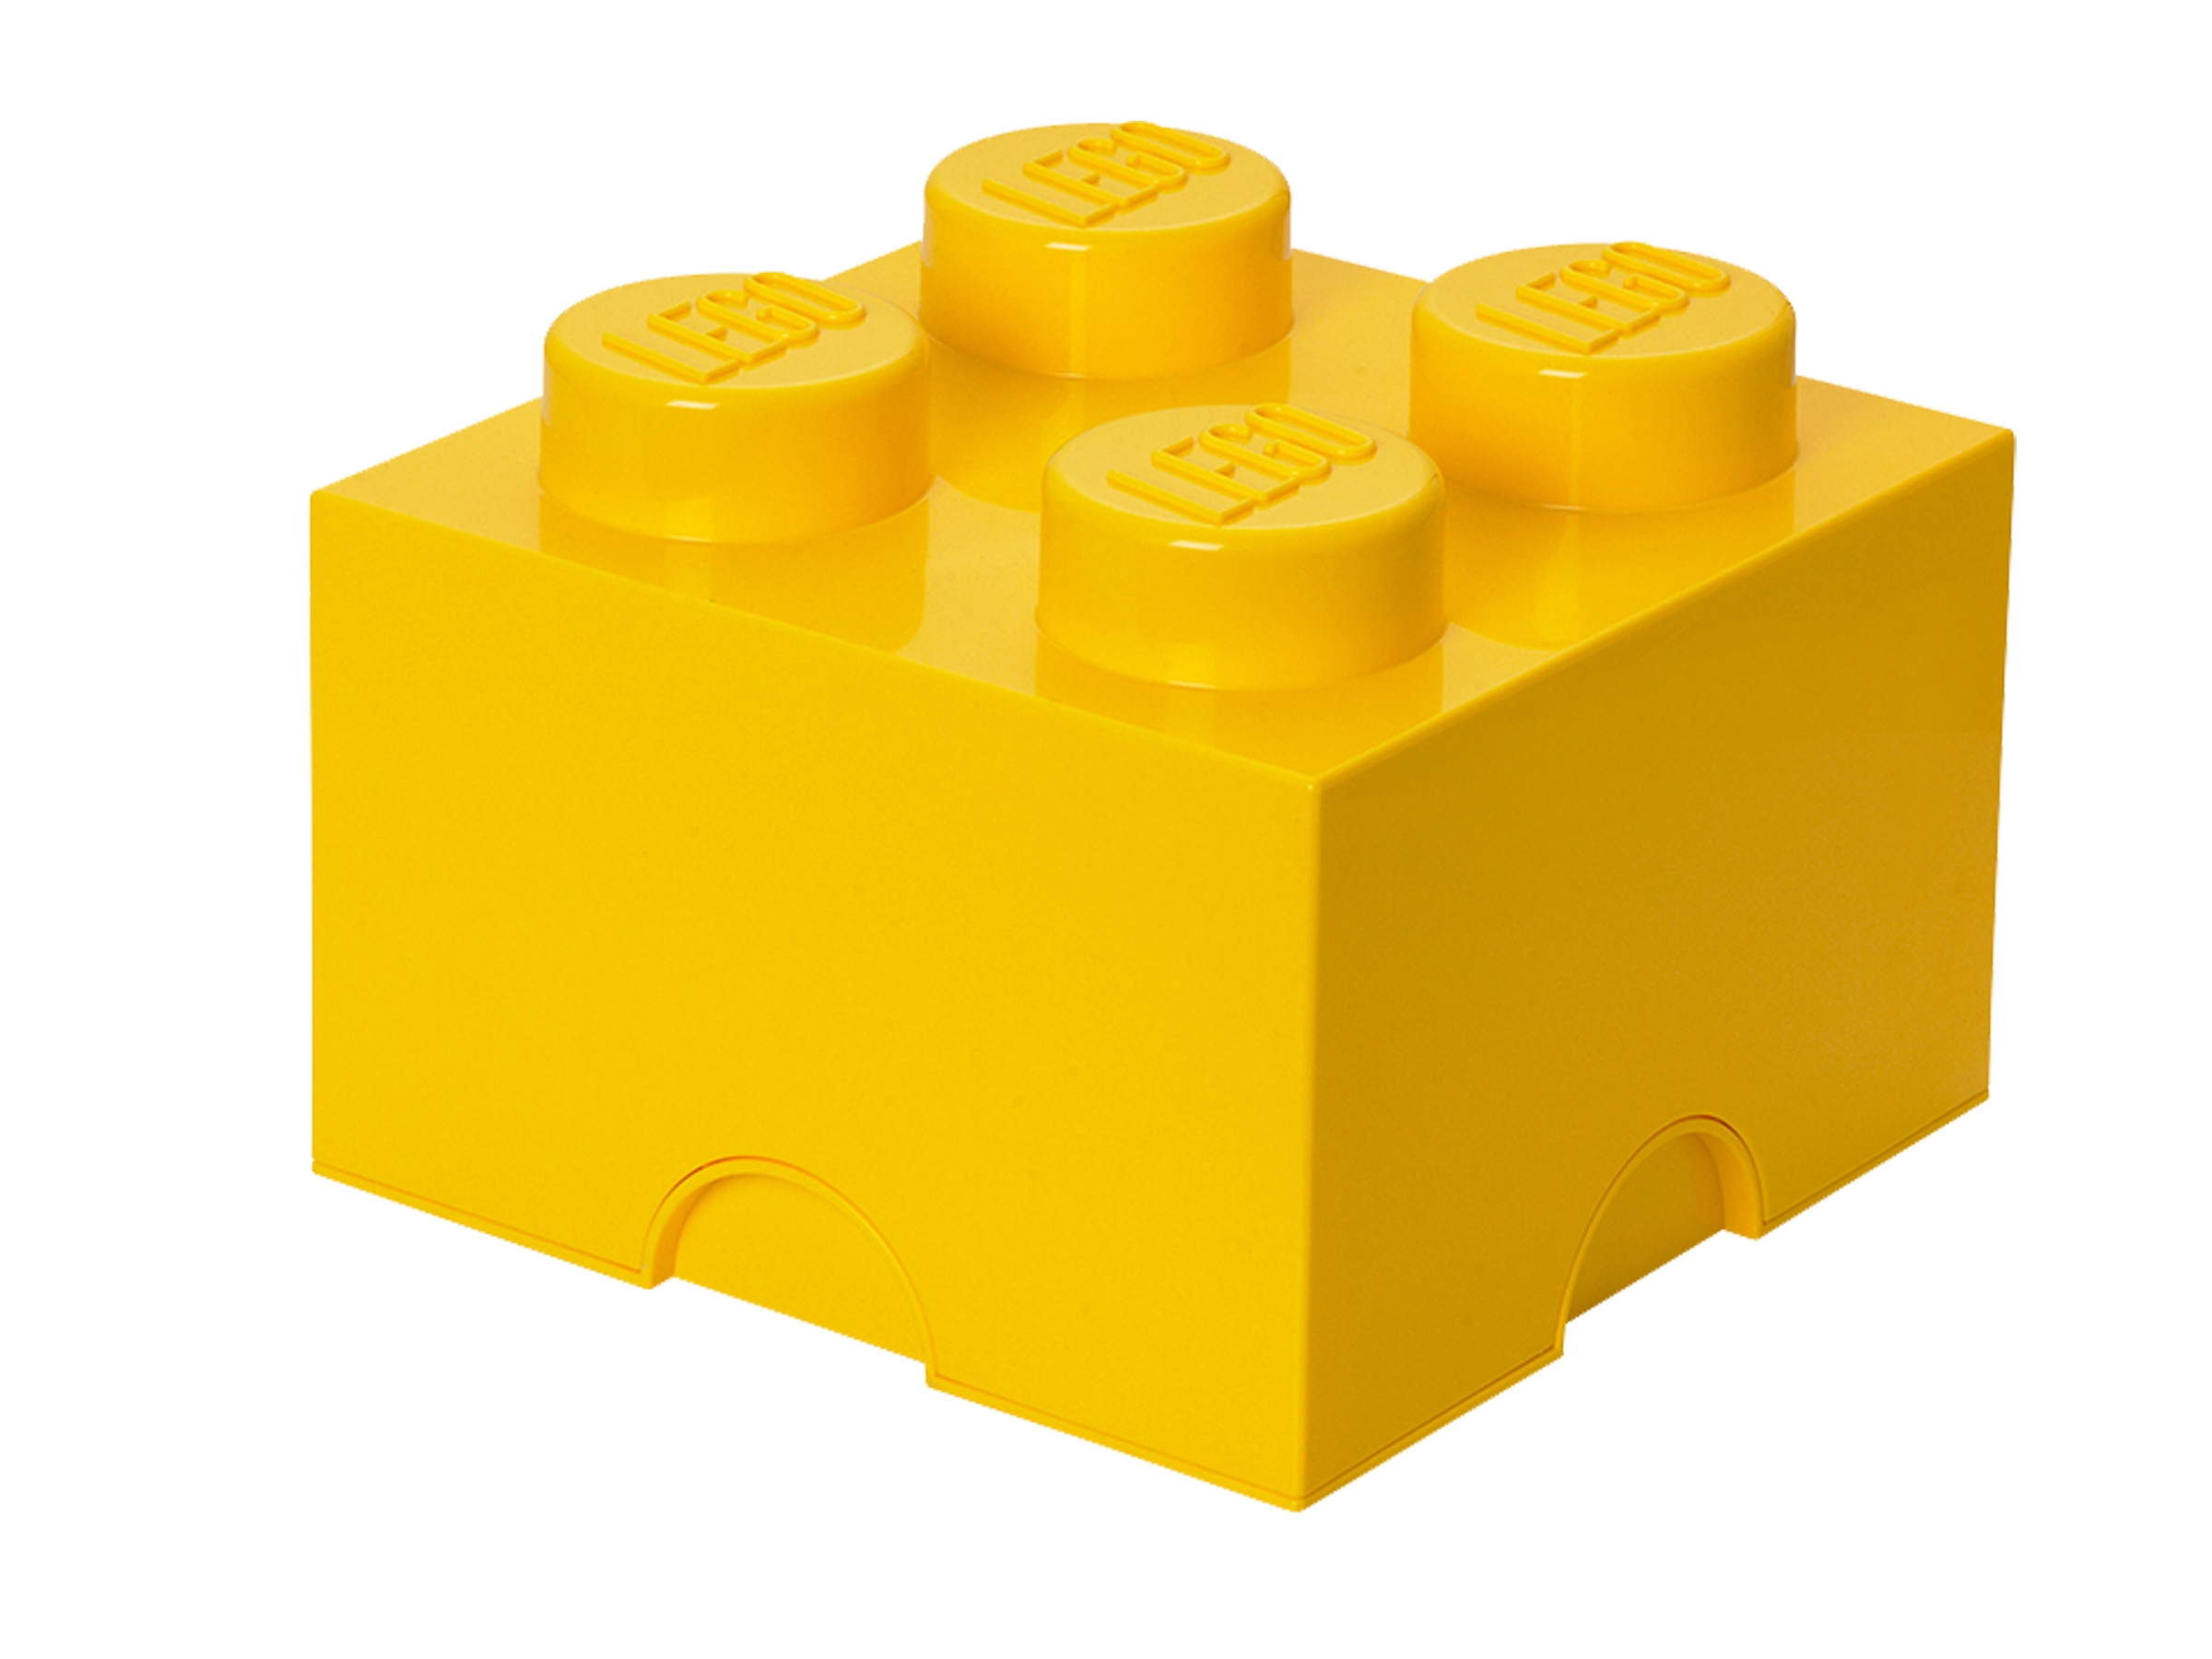 super sized lego bricks